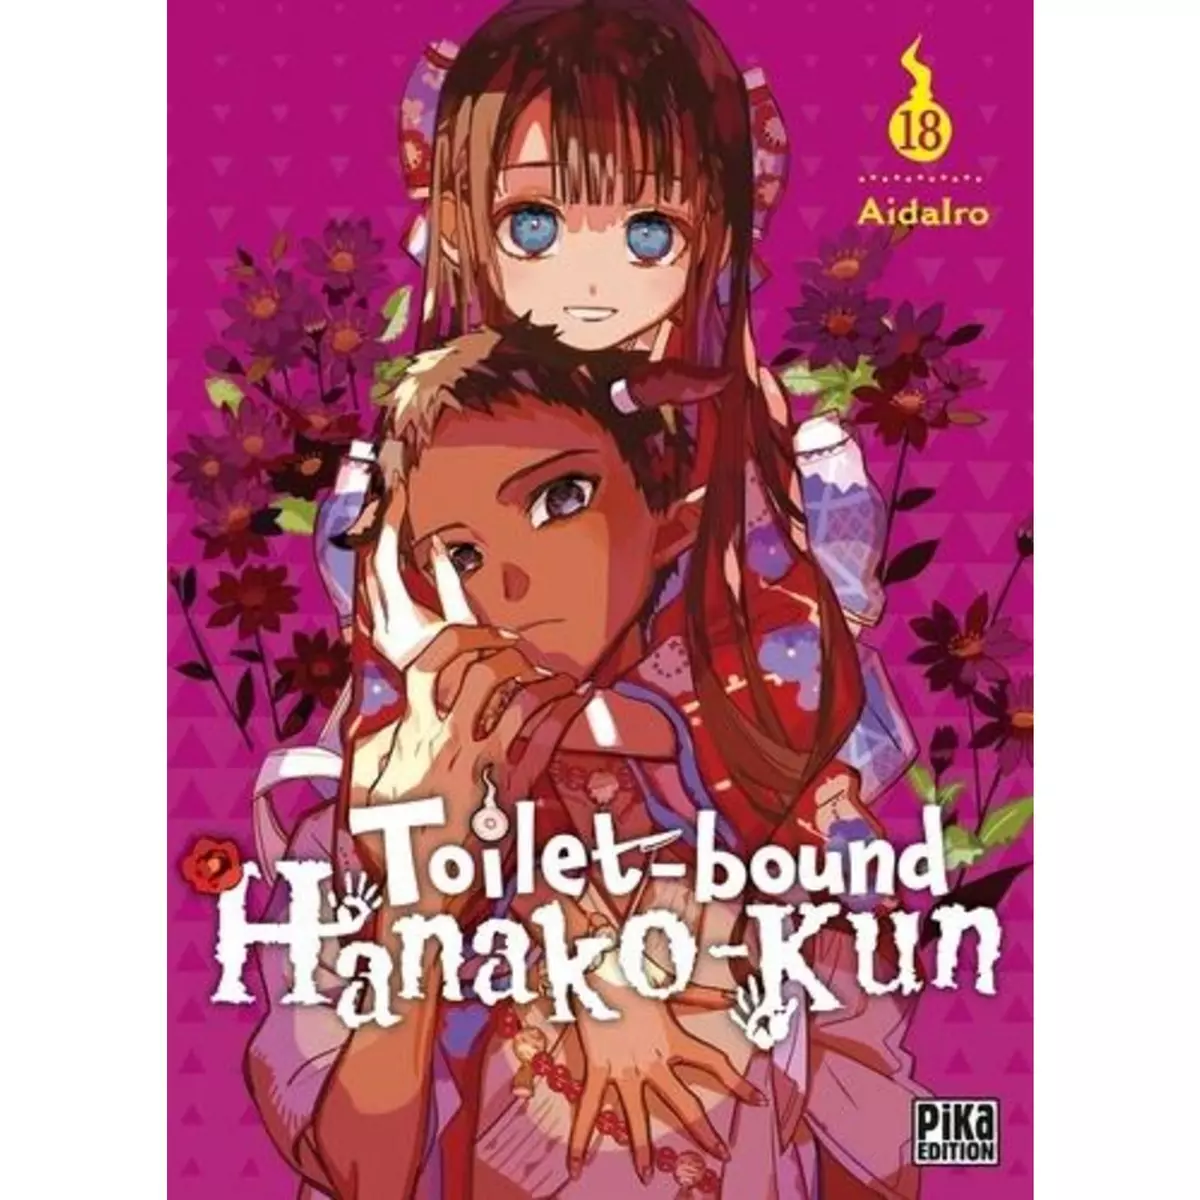  TOILET-BOUND HANAKO-KUN TOME 18 , AidaIro